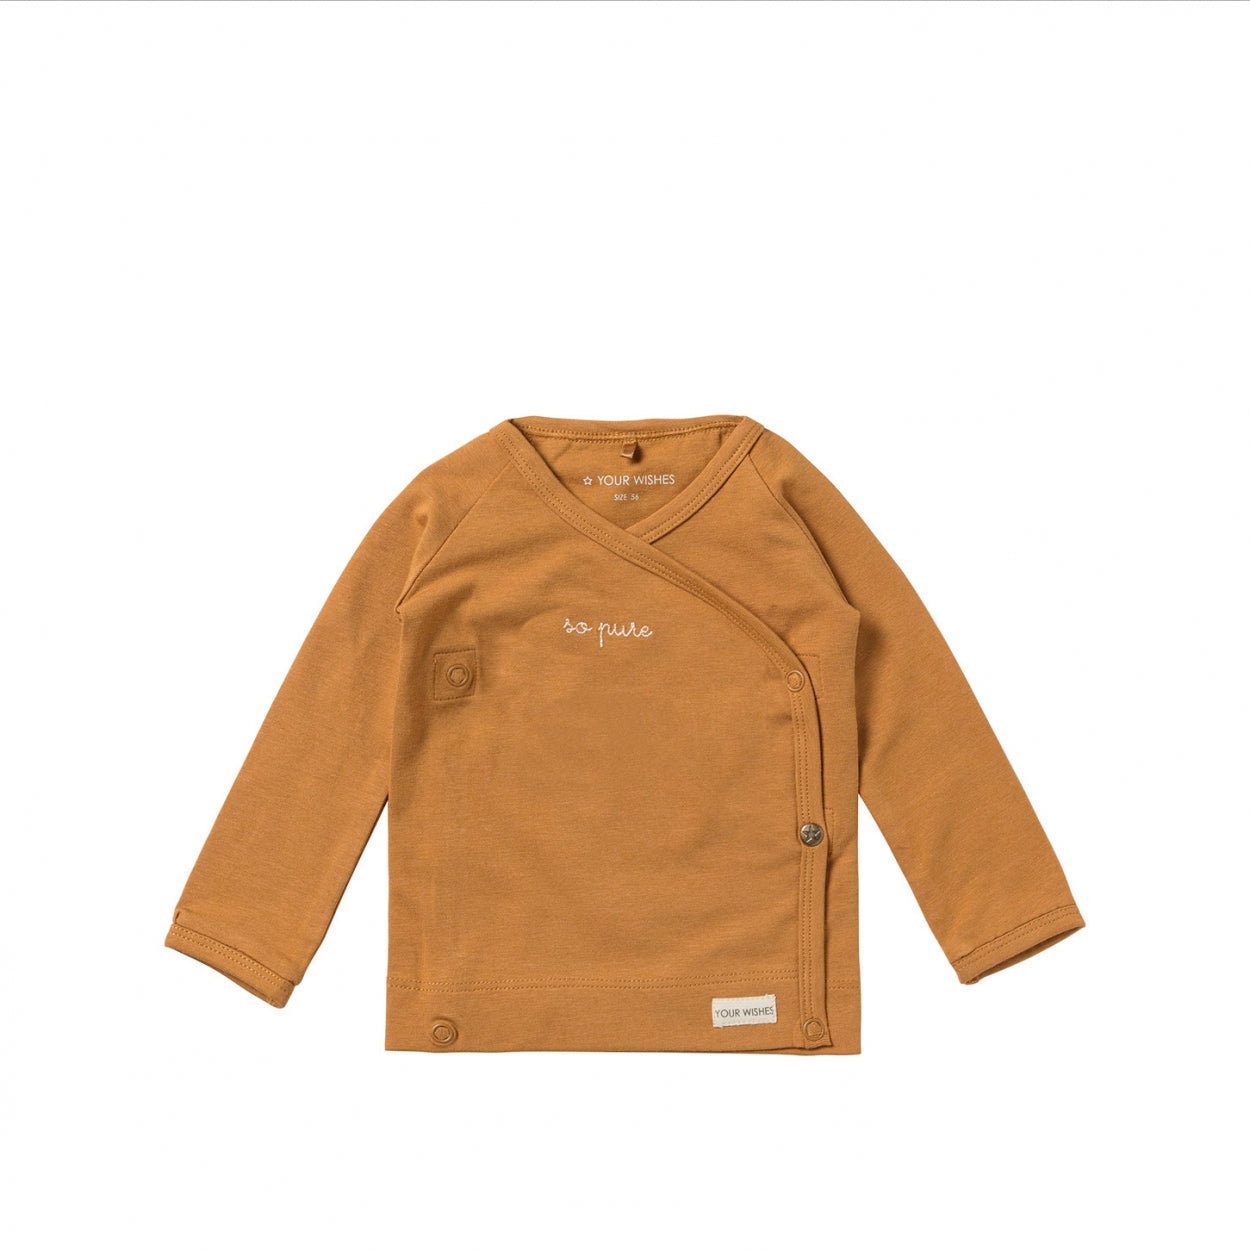 Jongens Overslagshirt met lange mouw Solid | Nais van Your Wishes Newborn in de kleur Brown Sugar in maat 68.